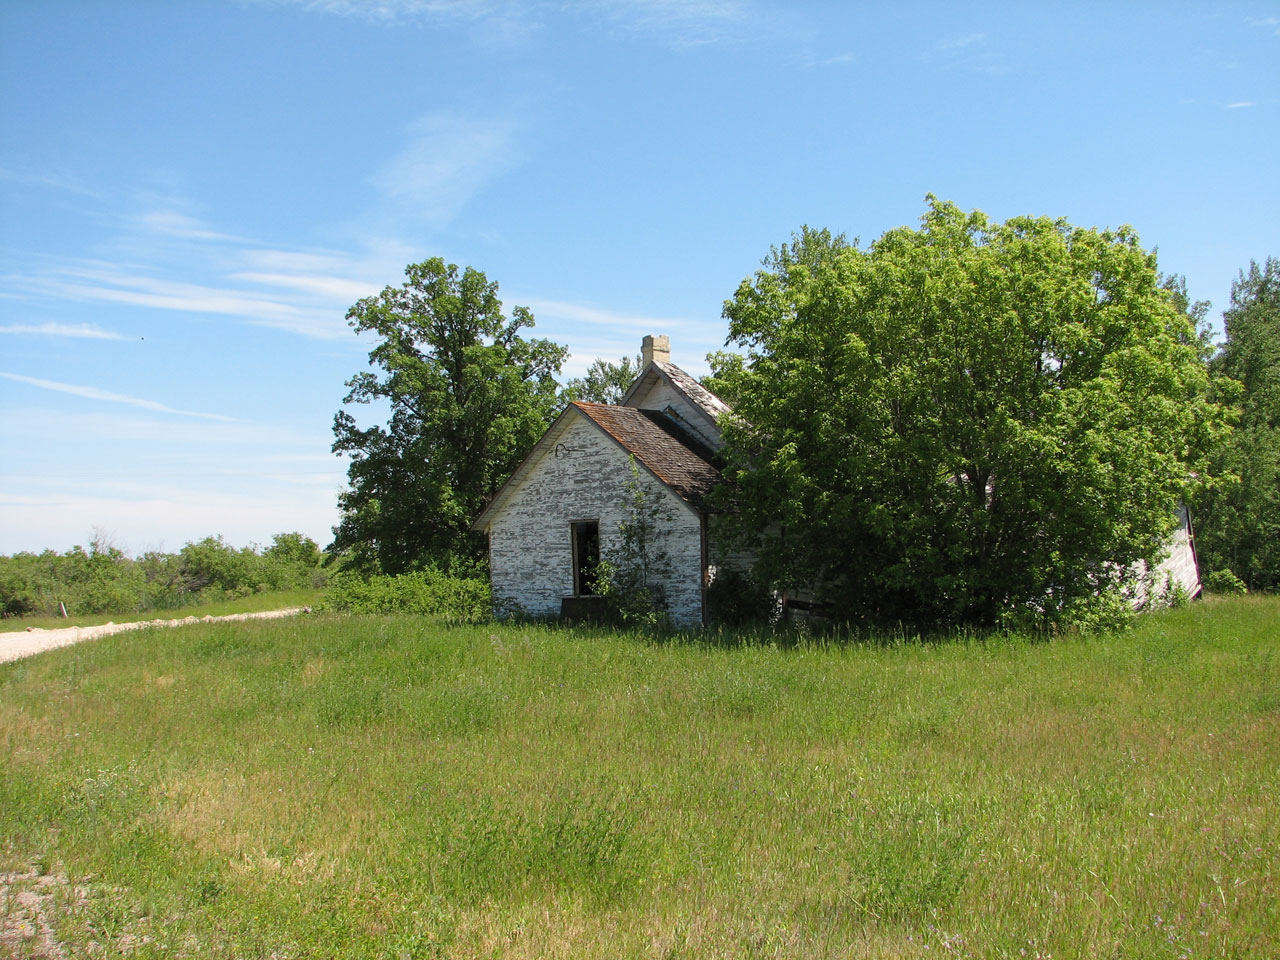 Rural Farm Building